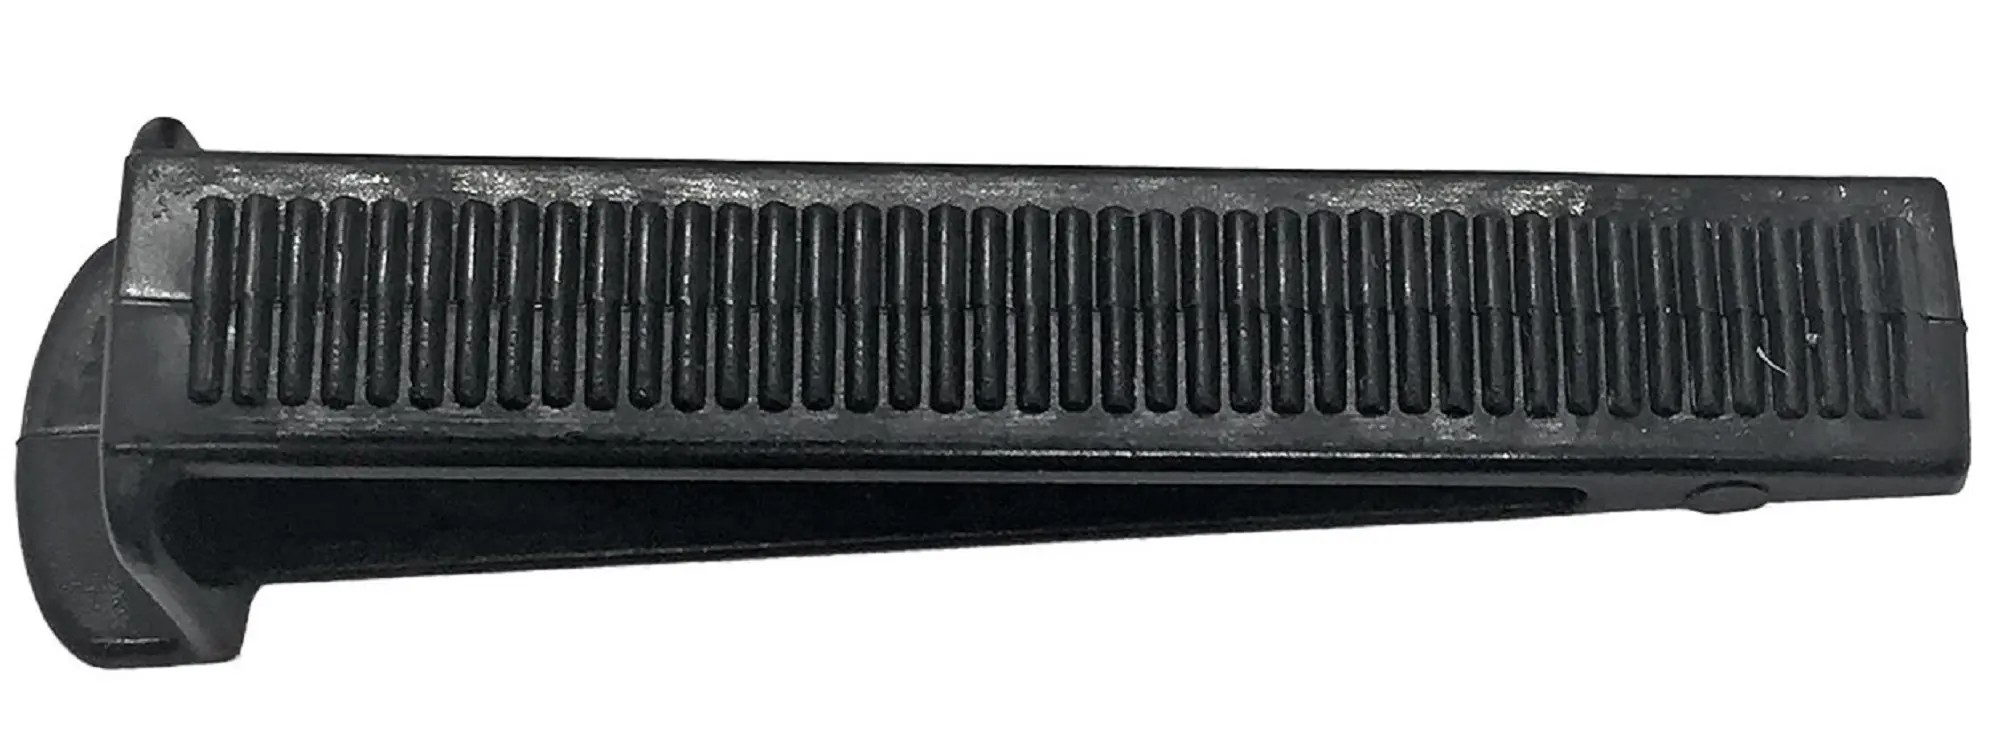 Клин для системы выравнивания плитки Dexter 100 шт комплект зажимы и клинья для выравнивания плитки dexter 1 5 мм 50 50 шт